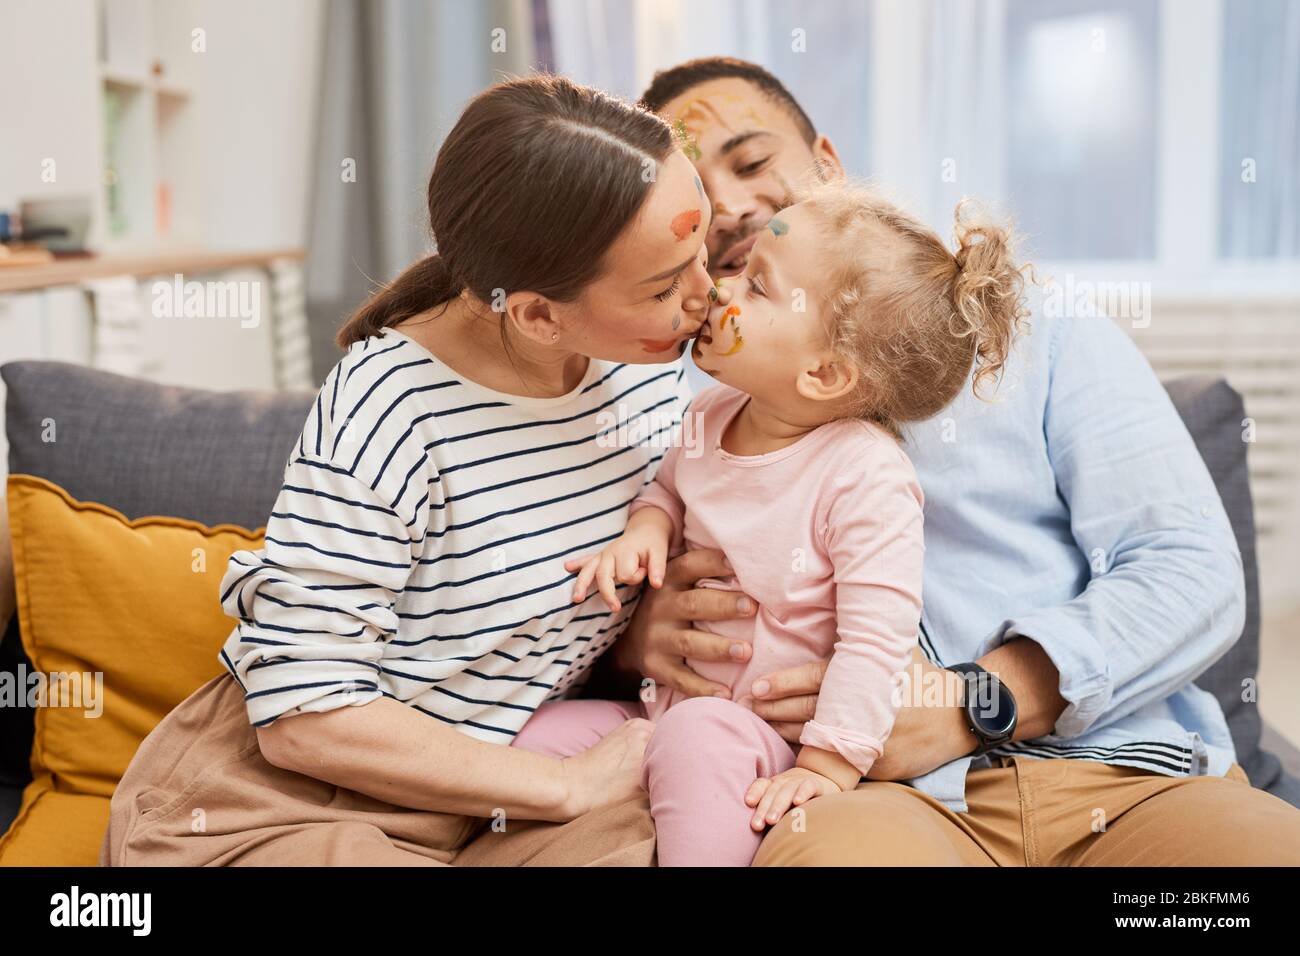 Glückliche junge Familie von drei zusammen auf dem Sofa sitzen, Mutter küsst ihre kleine Tochter, horizontale mittlere Aufnahme Stockfoto